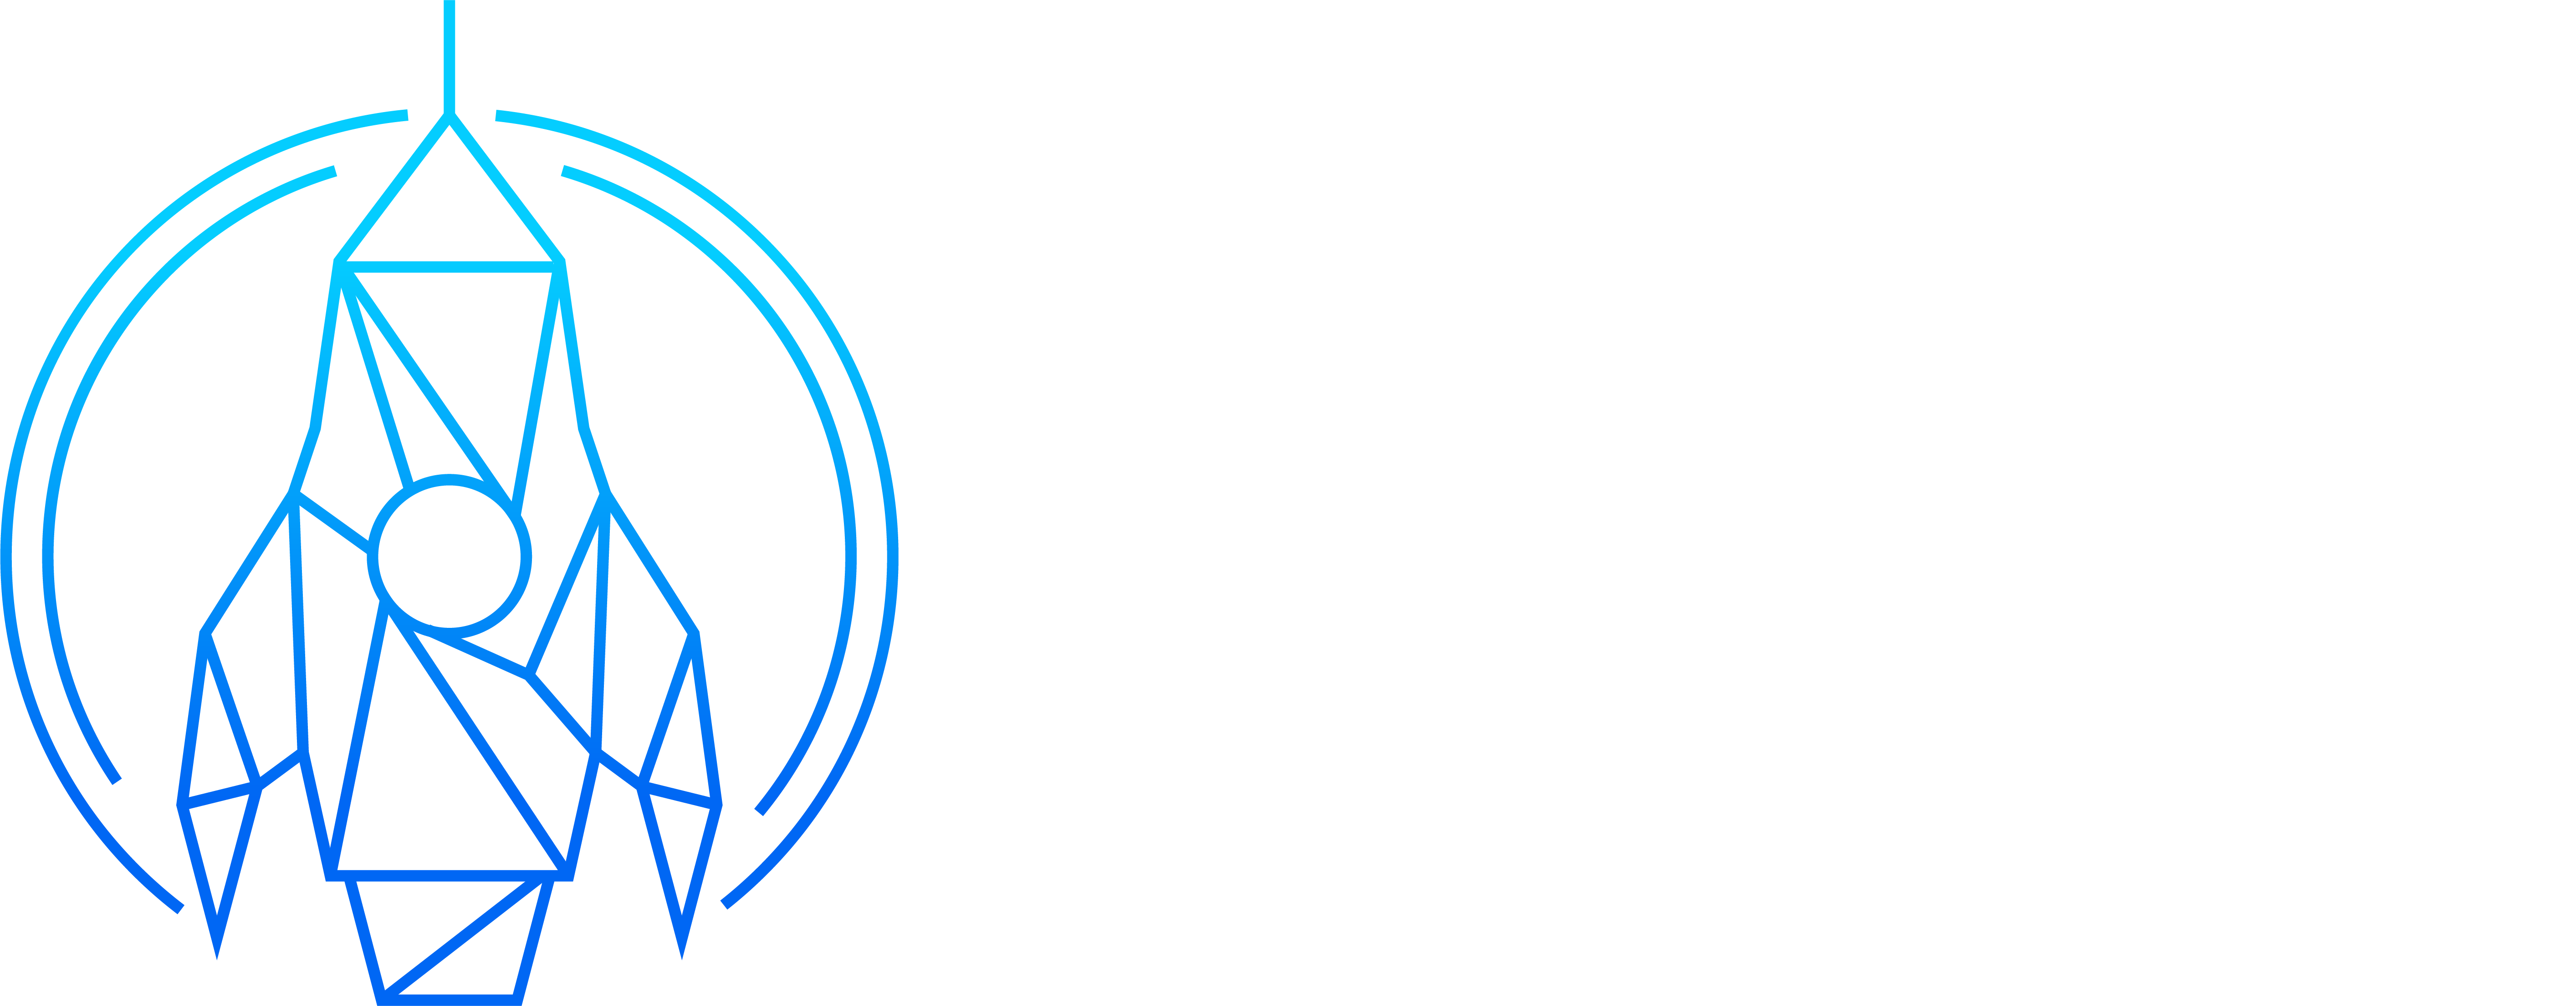 Design Thruster